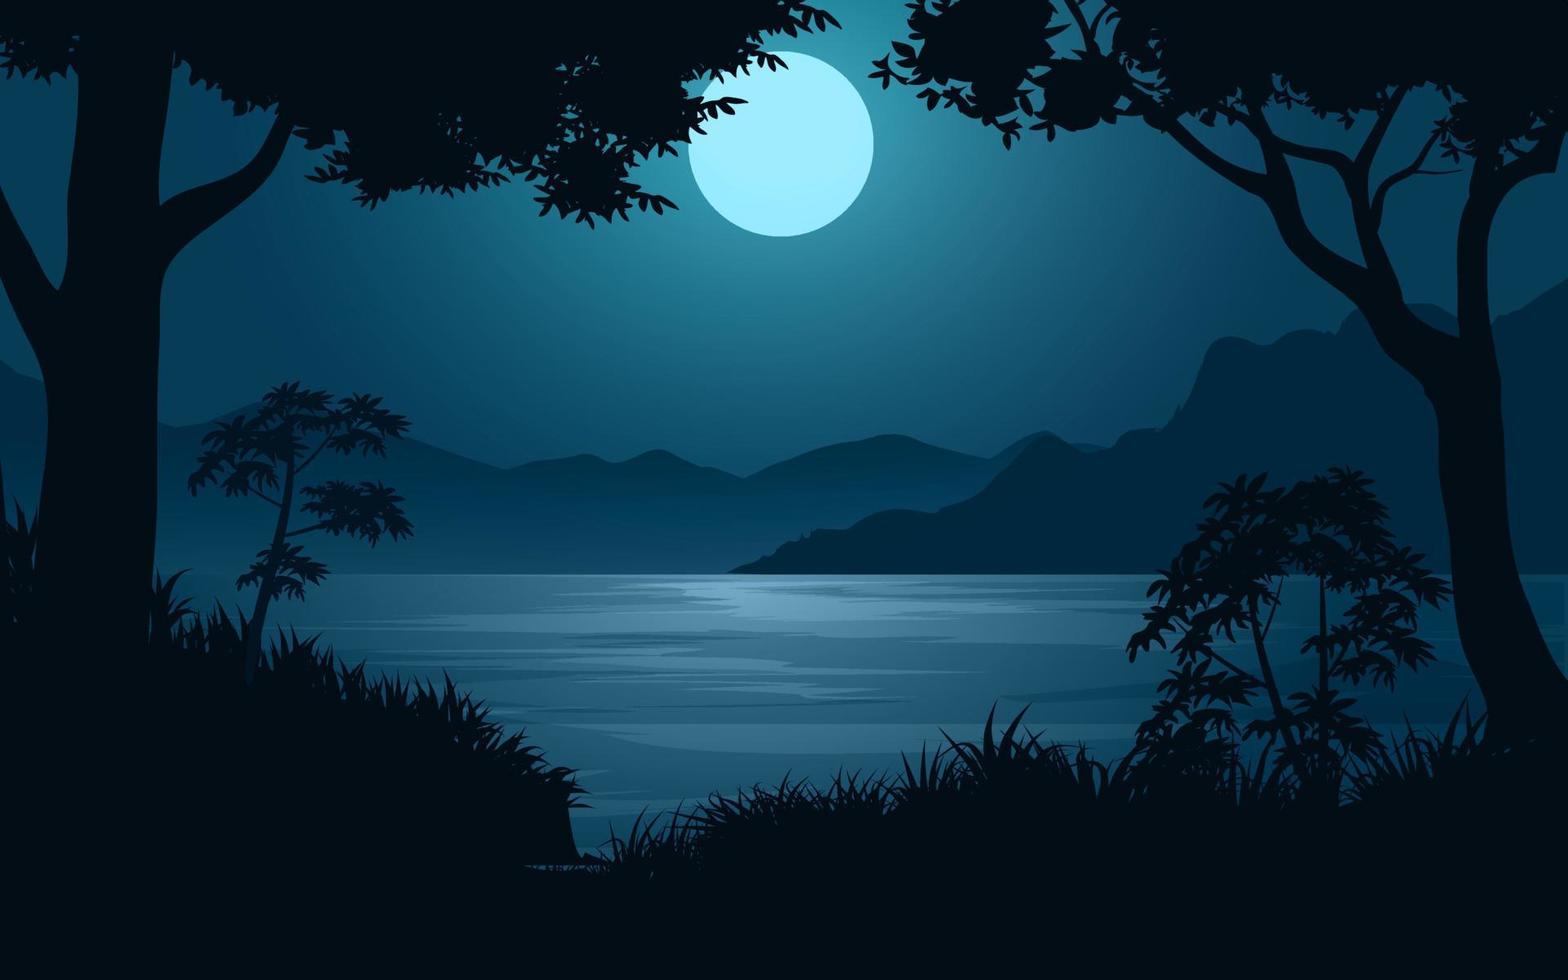 nacht aan het meer met maanlichtlandschap in vlakke stijl vector